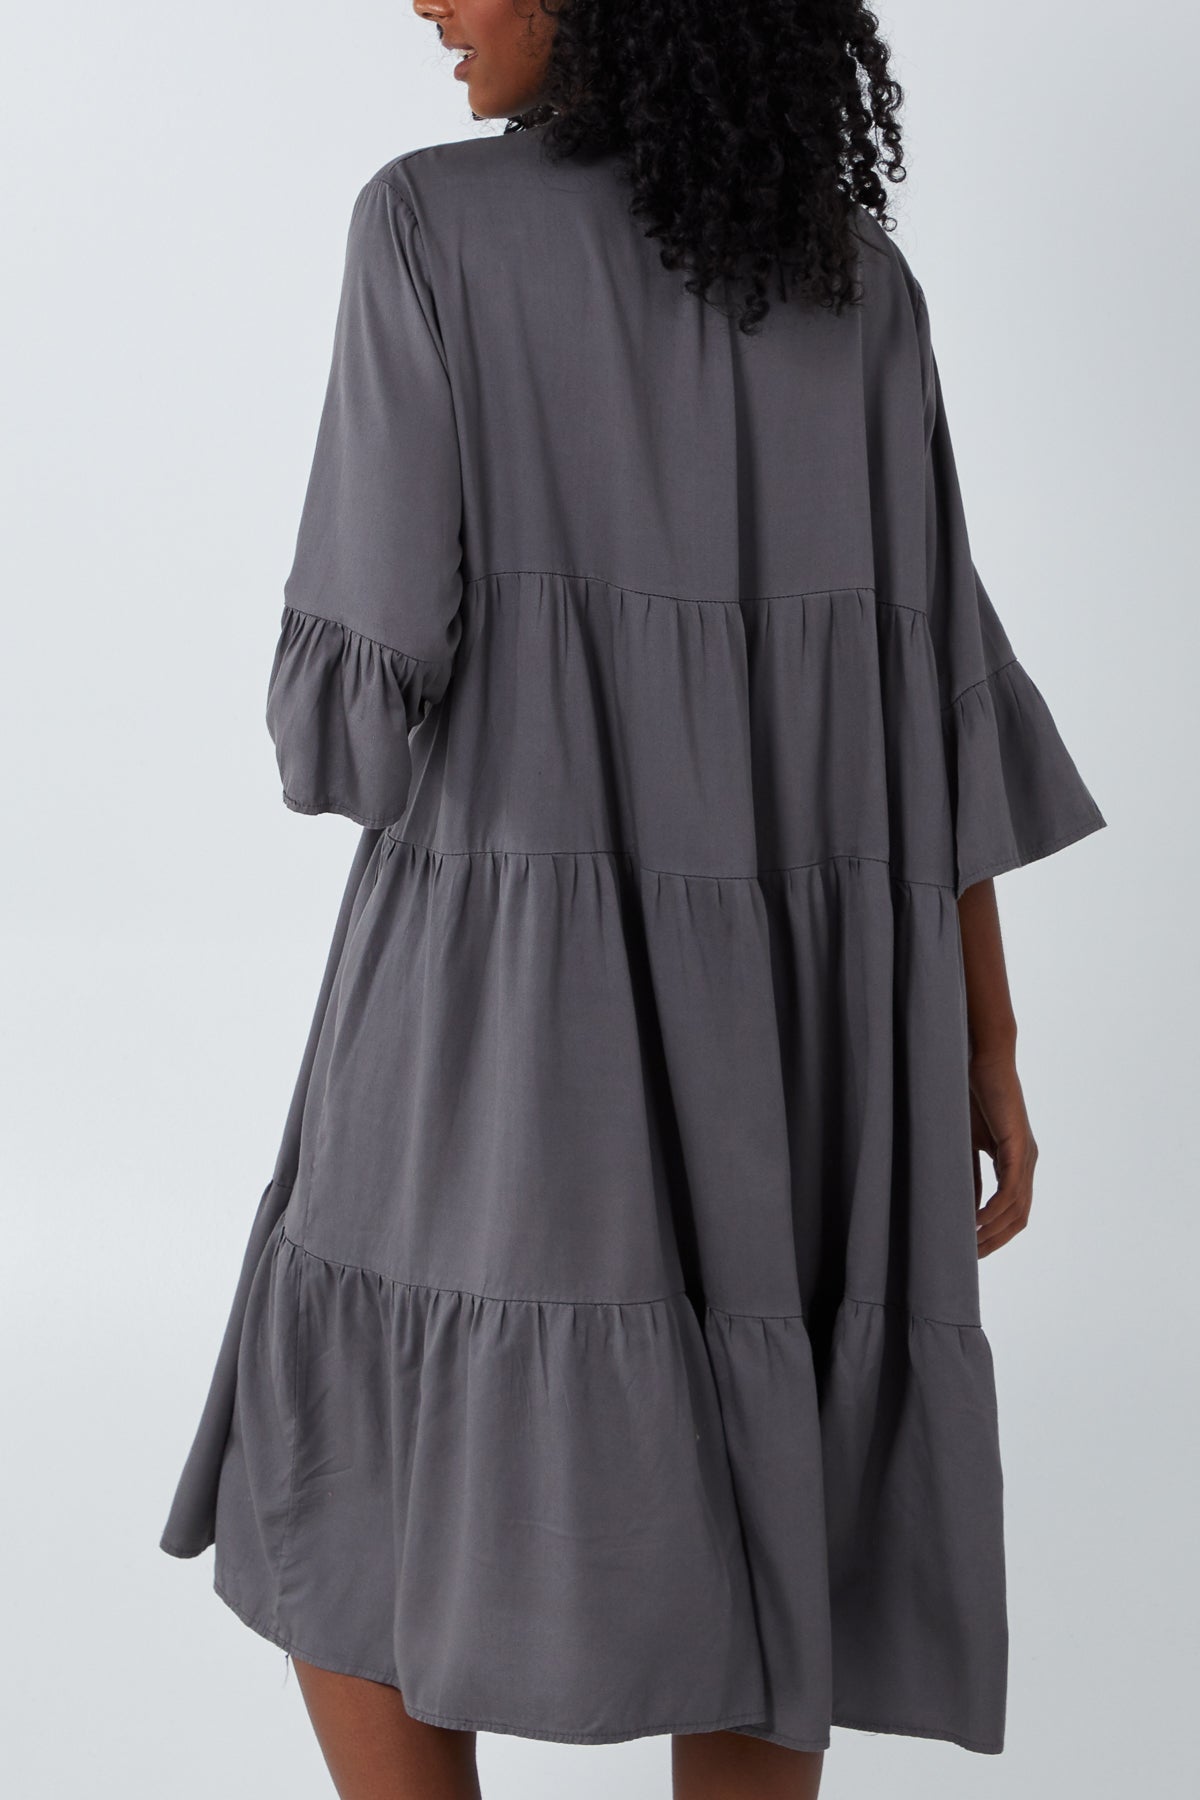 Tiered Frill Sleeve Midi Dress